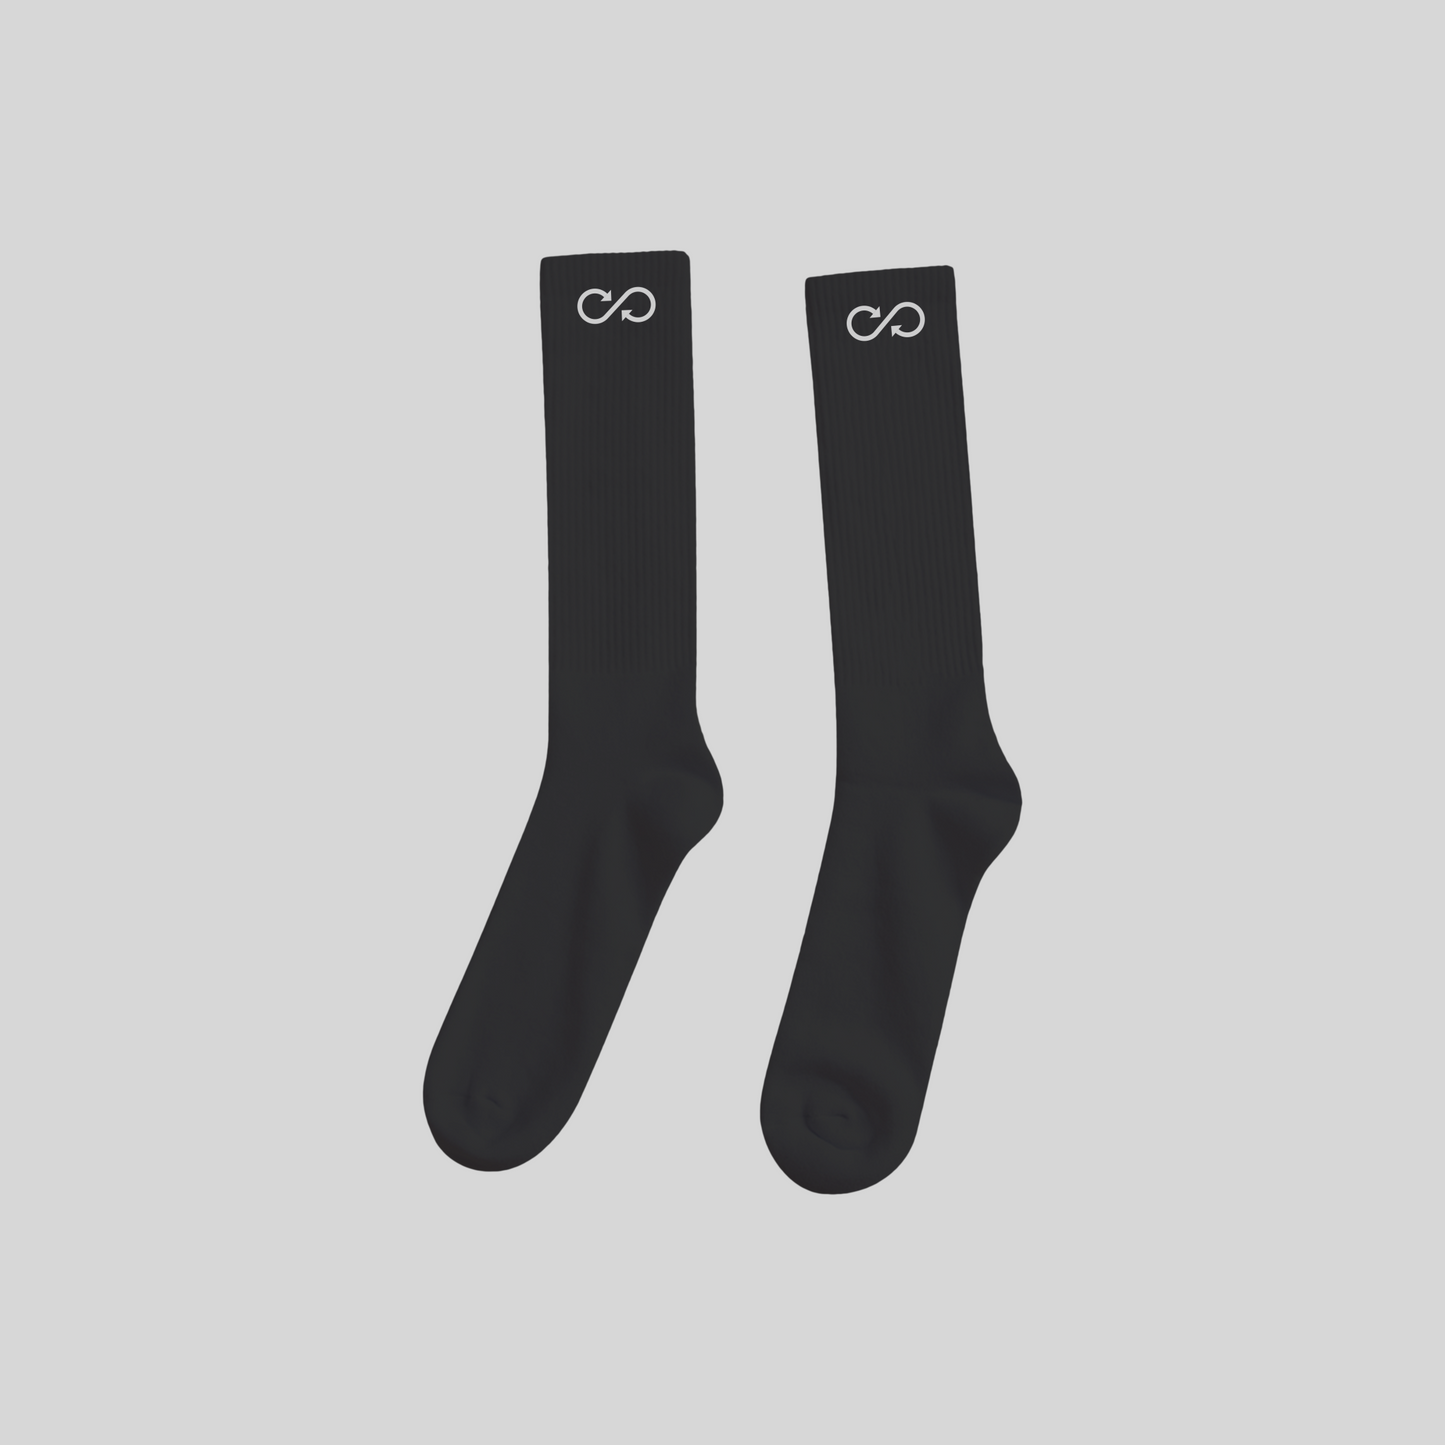 Rebuy Socks